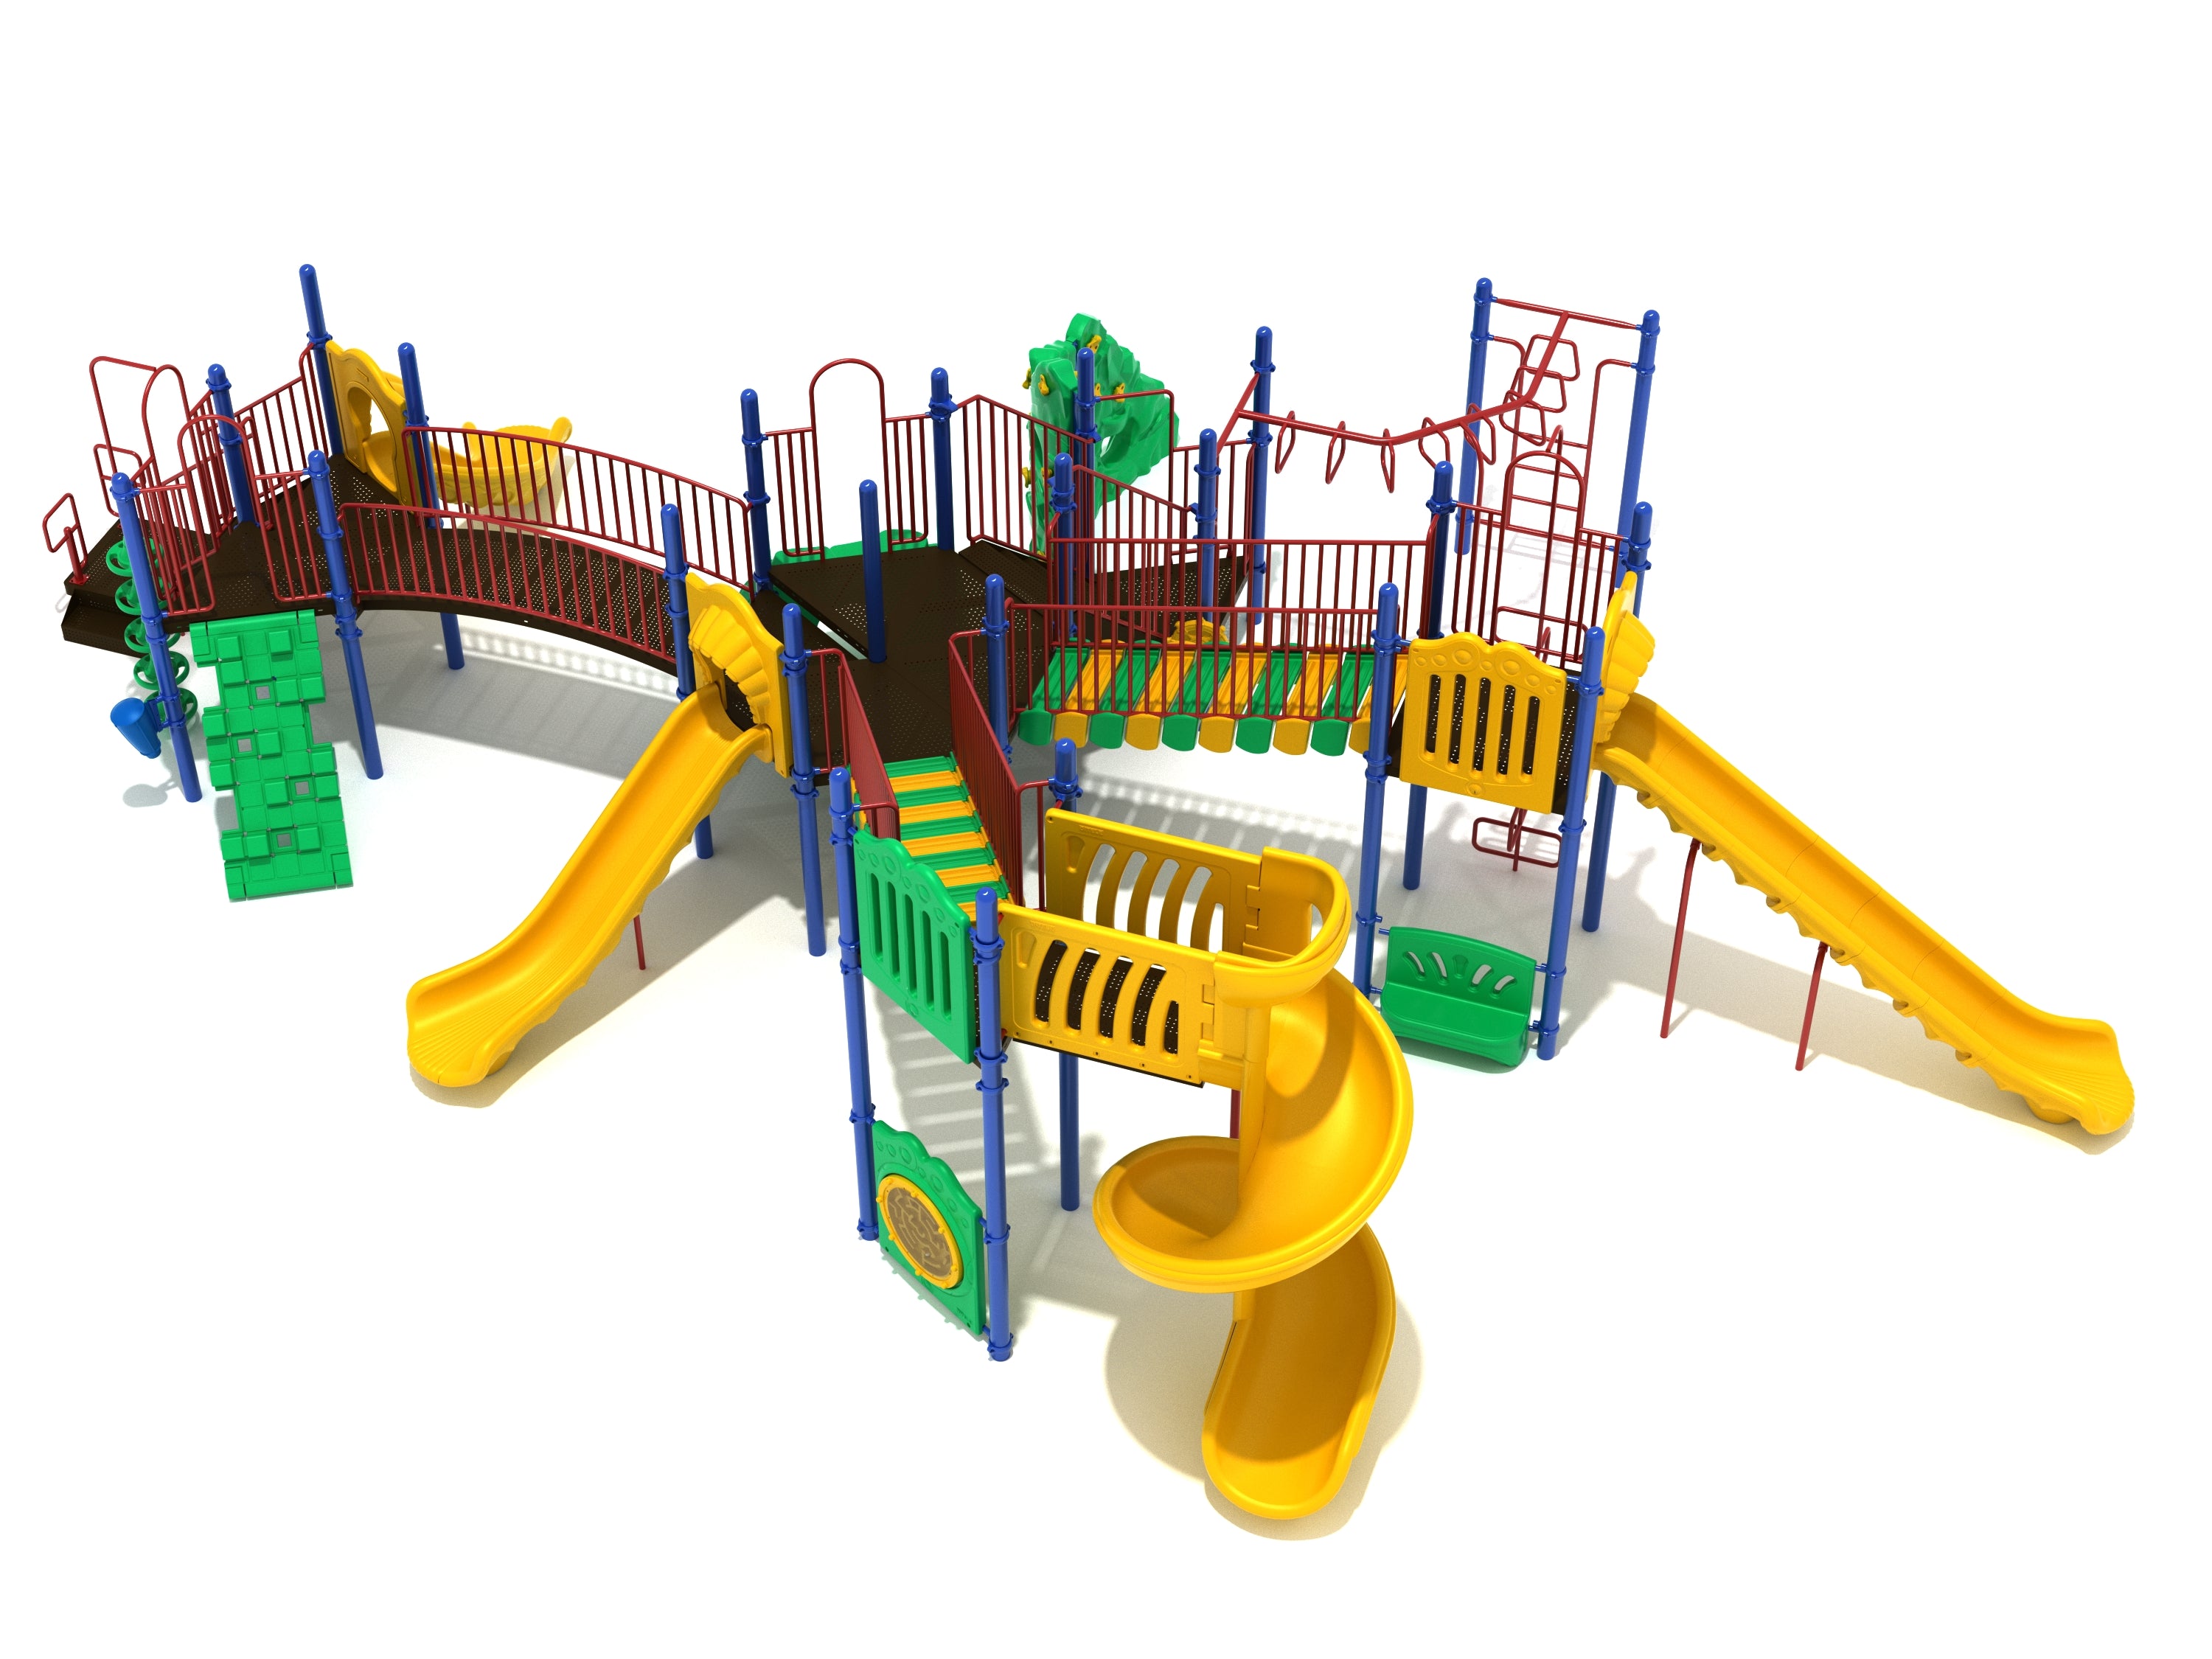 Drexel Pointe Playground